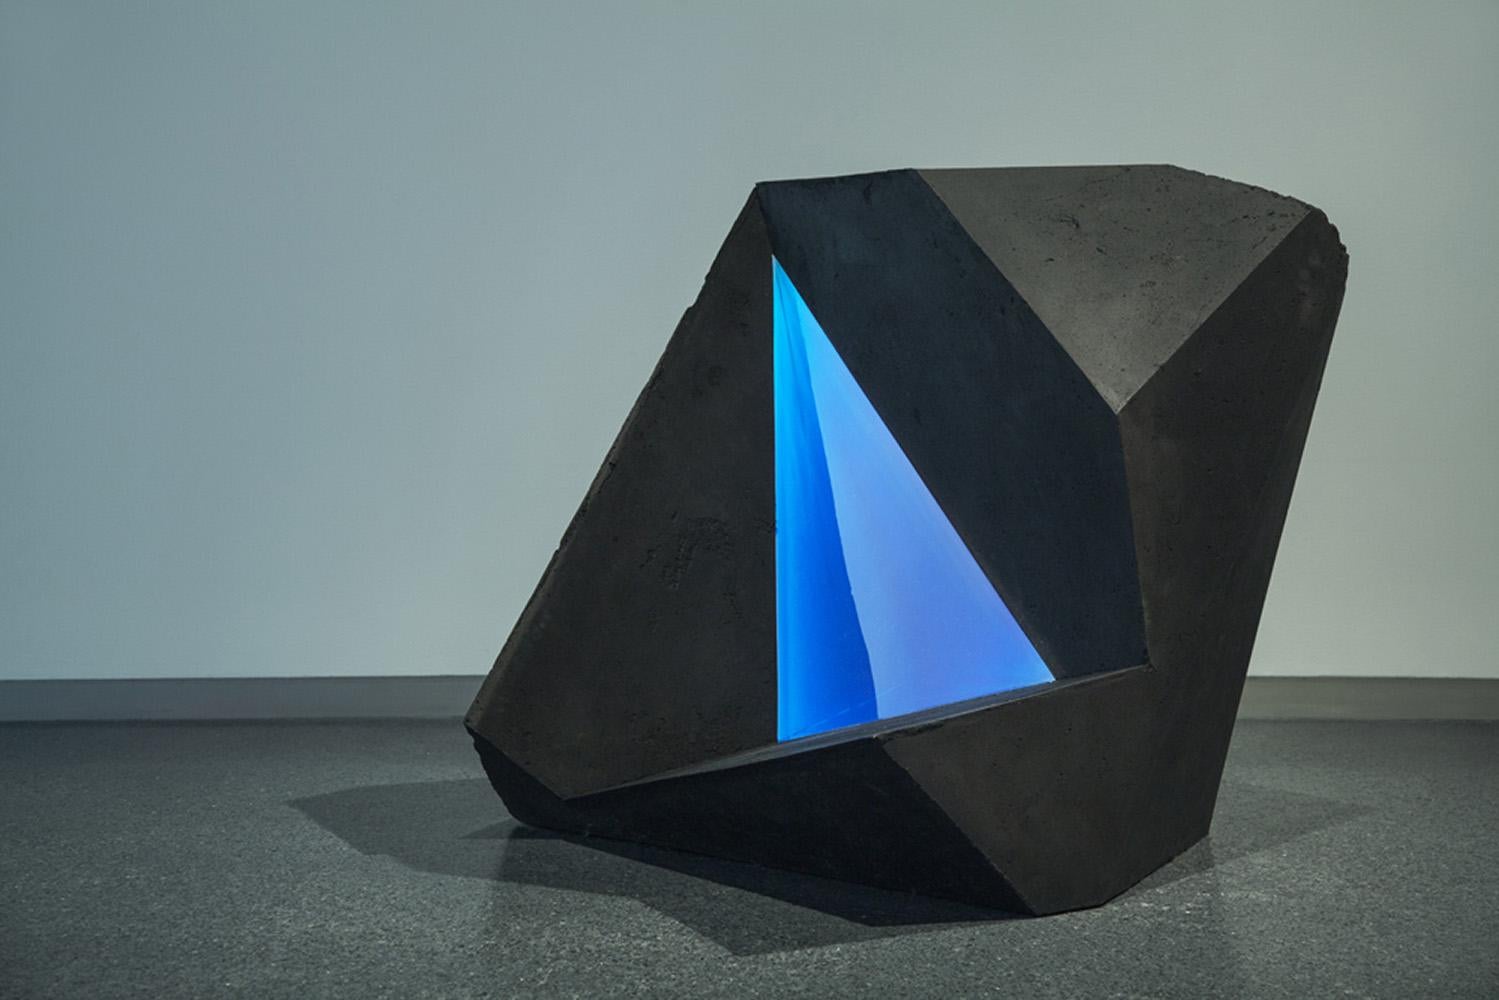 Charbon, résine de polyester, Jesmonite. 100 cm × 100 cm × 100 cm.
L'artiste a créé la série Carbon Voids en combinant diverses formes géométriques "positives" (créant des solides) et "négatives" (créant des vides). Dans Carbon Void Blue, un